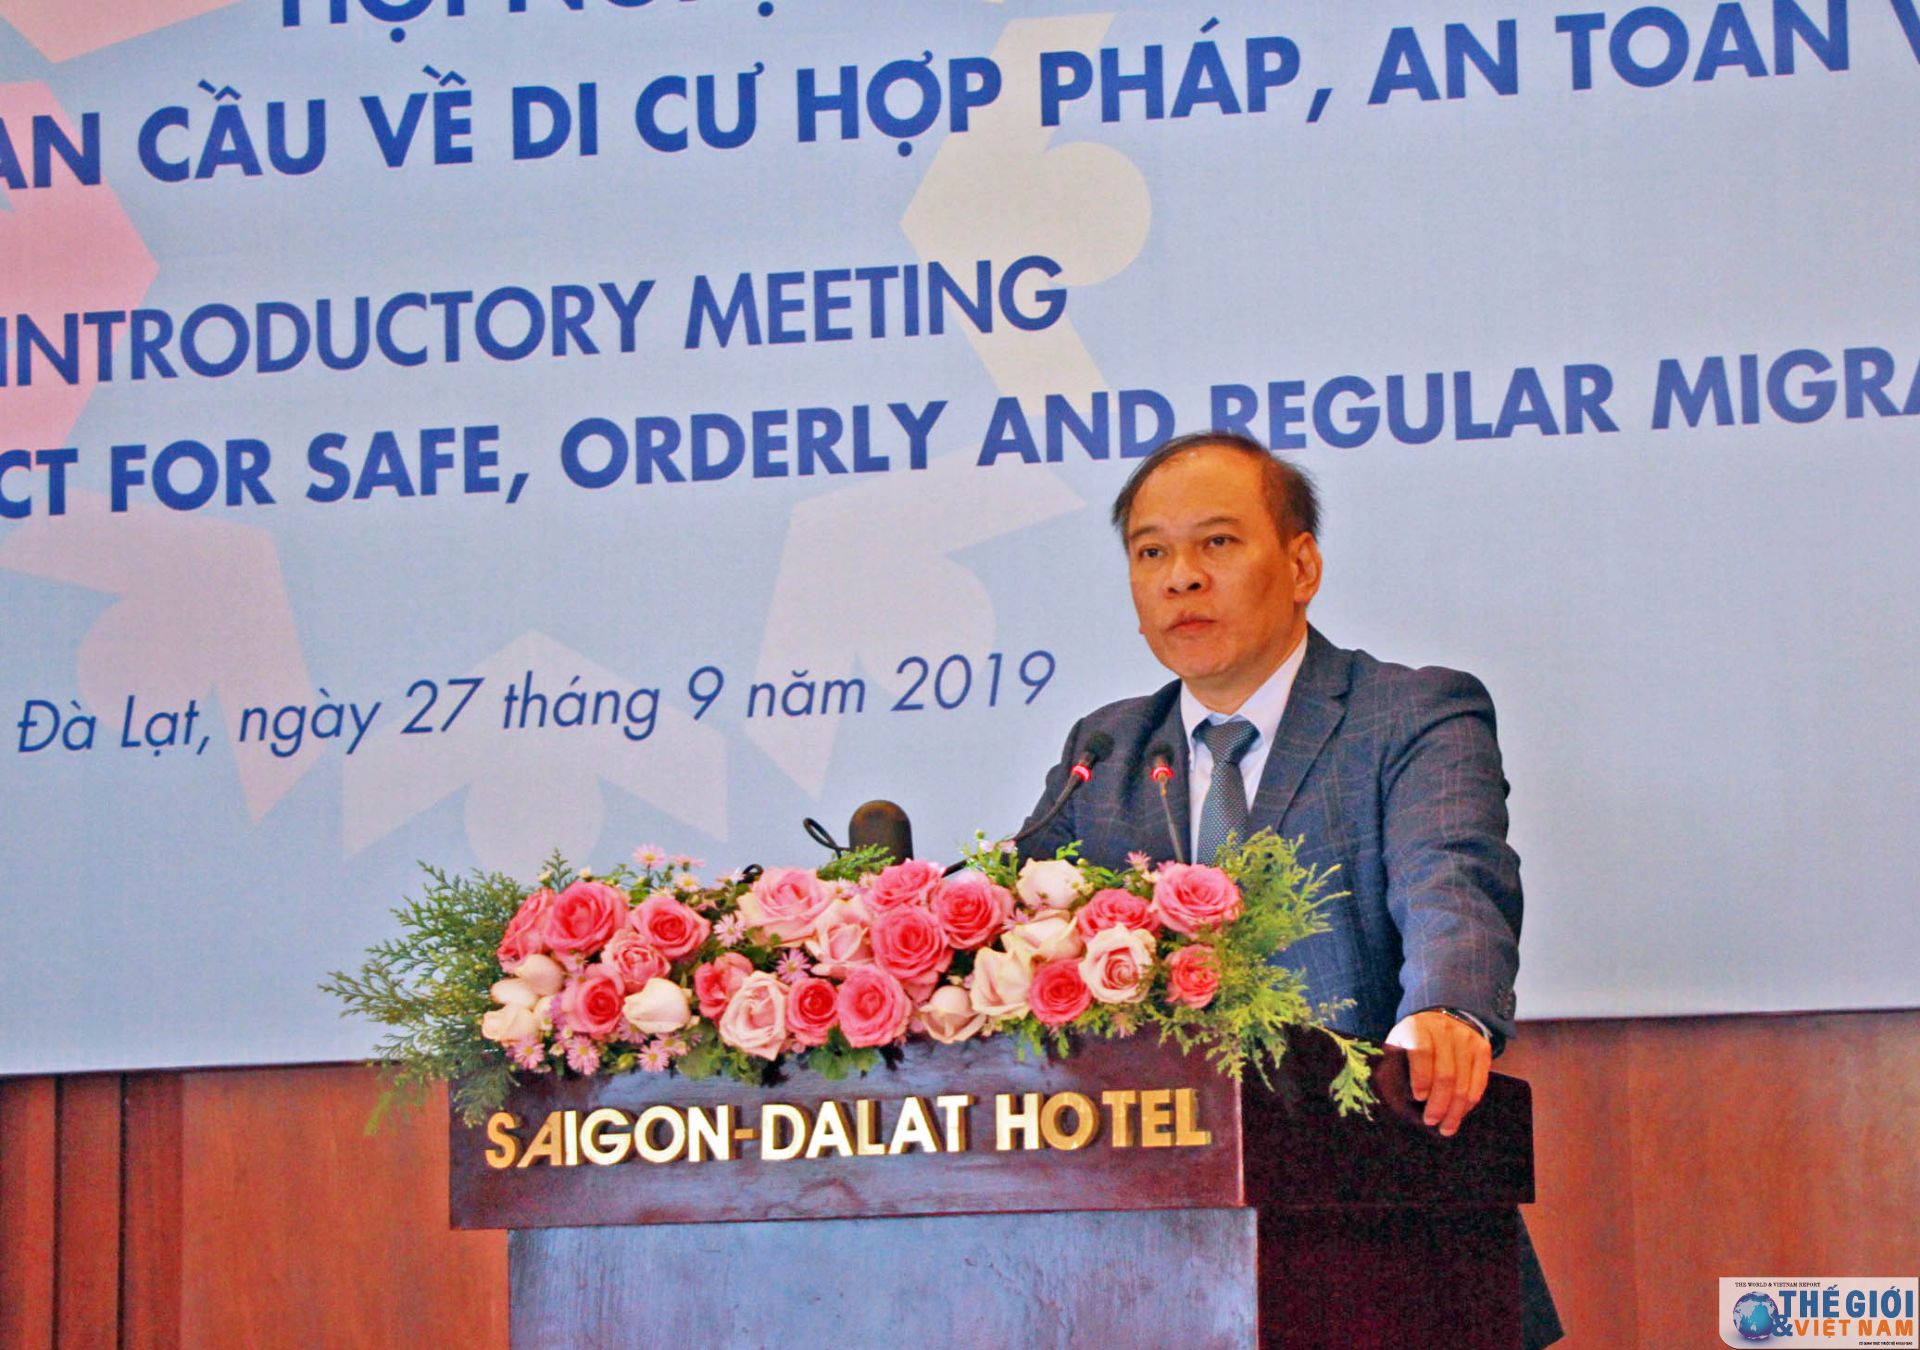 vietnam broadens understanding of migration issues